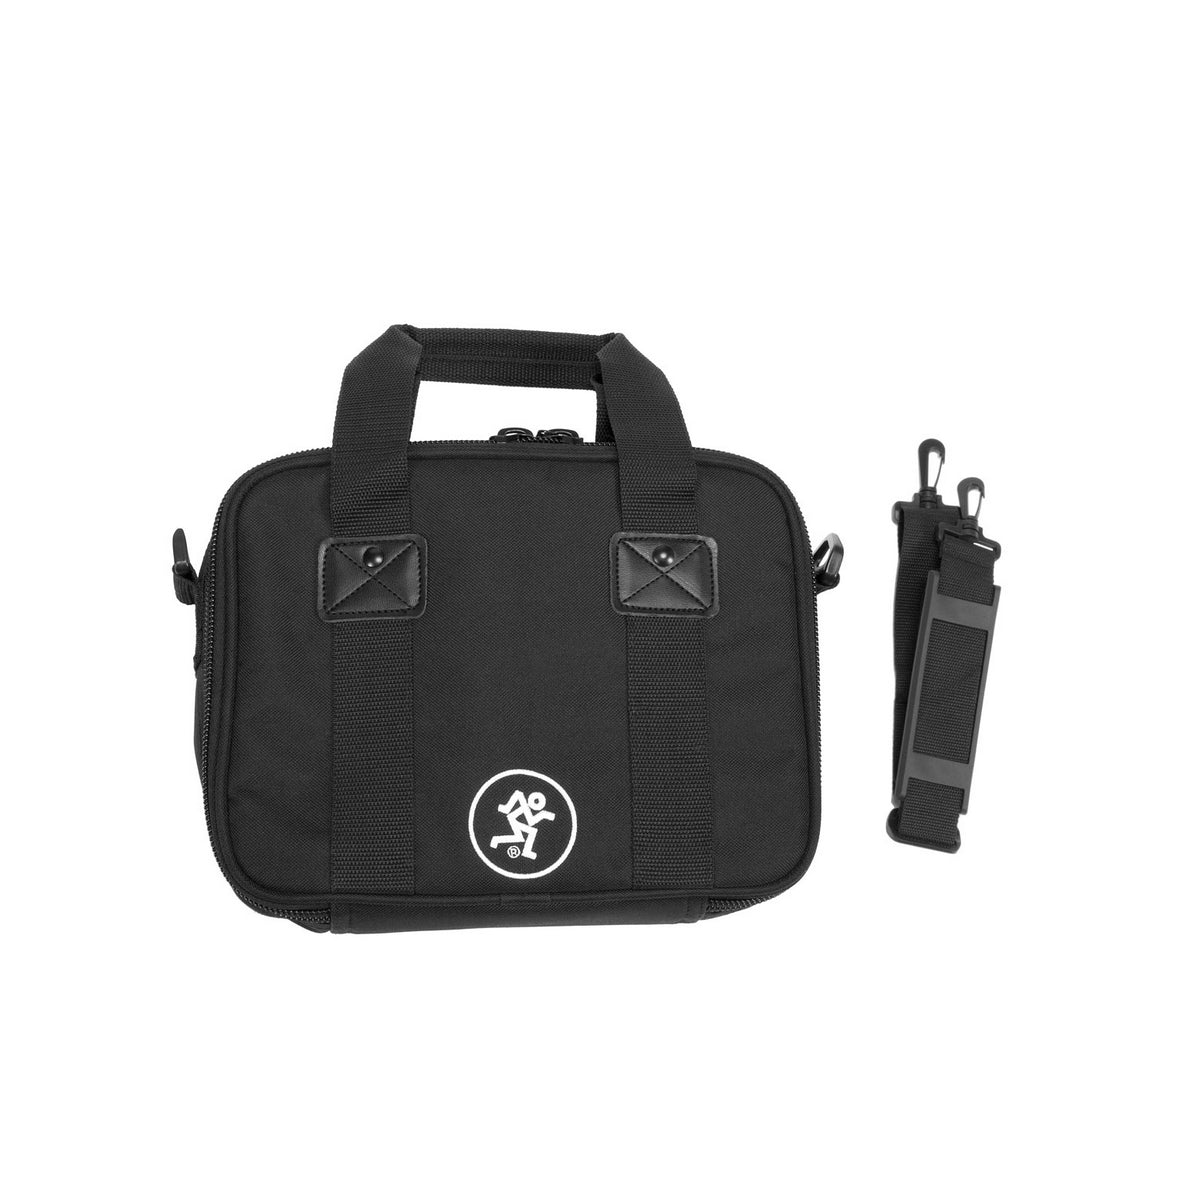 Mackie 402VLZ Bag | Mixer Bag for 402VLZ4 & VLZ3